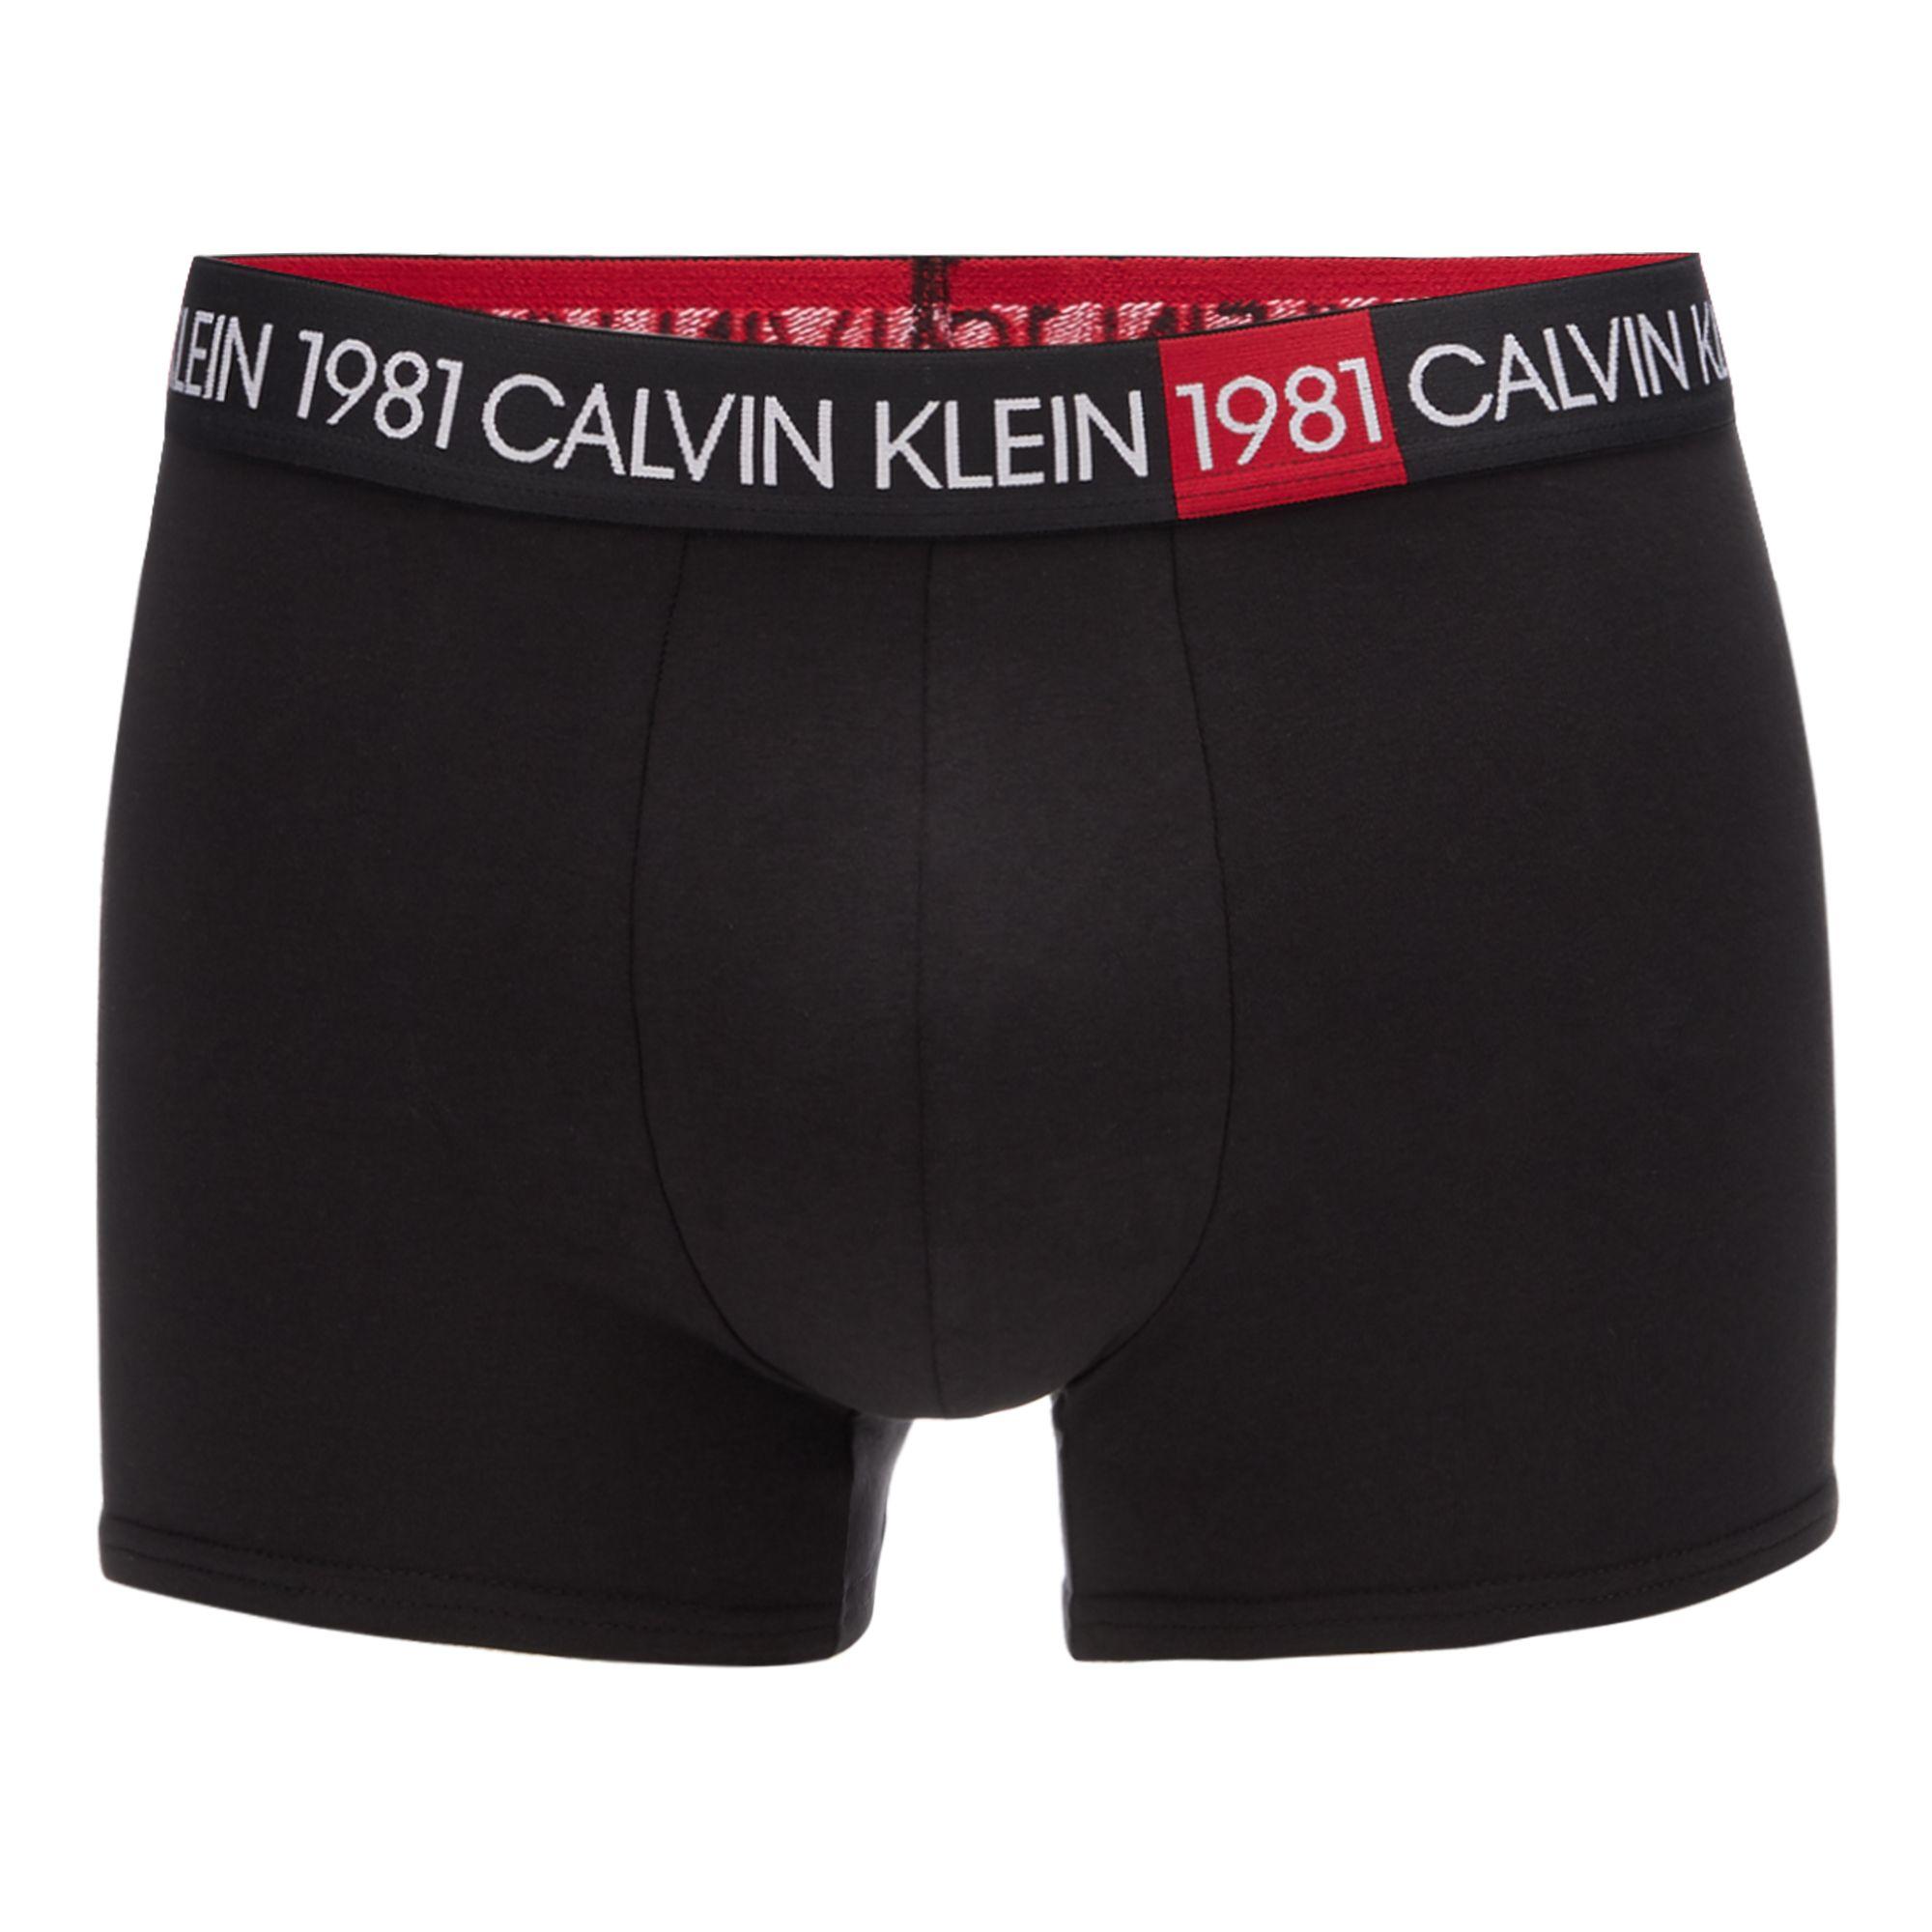 Calvin Klein Cotton 1981 Underwear Trunks in Black for Men - Lyst